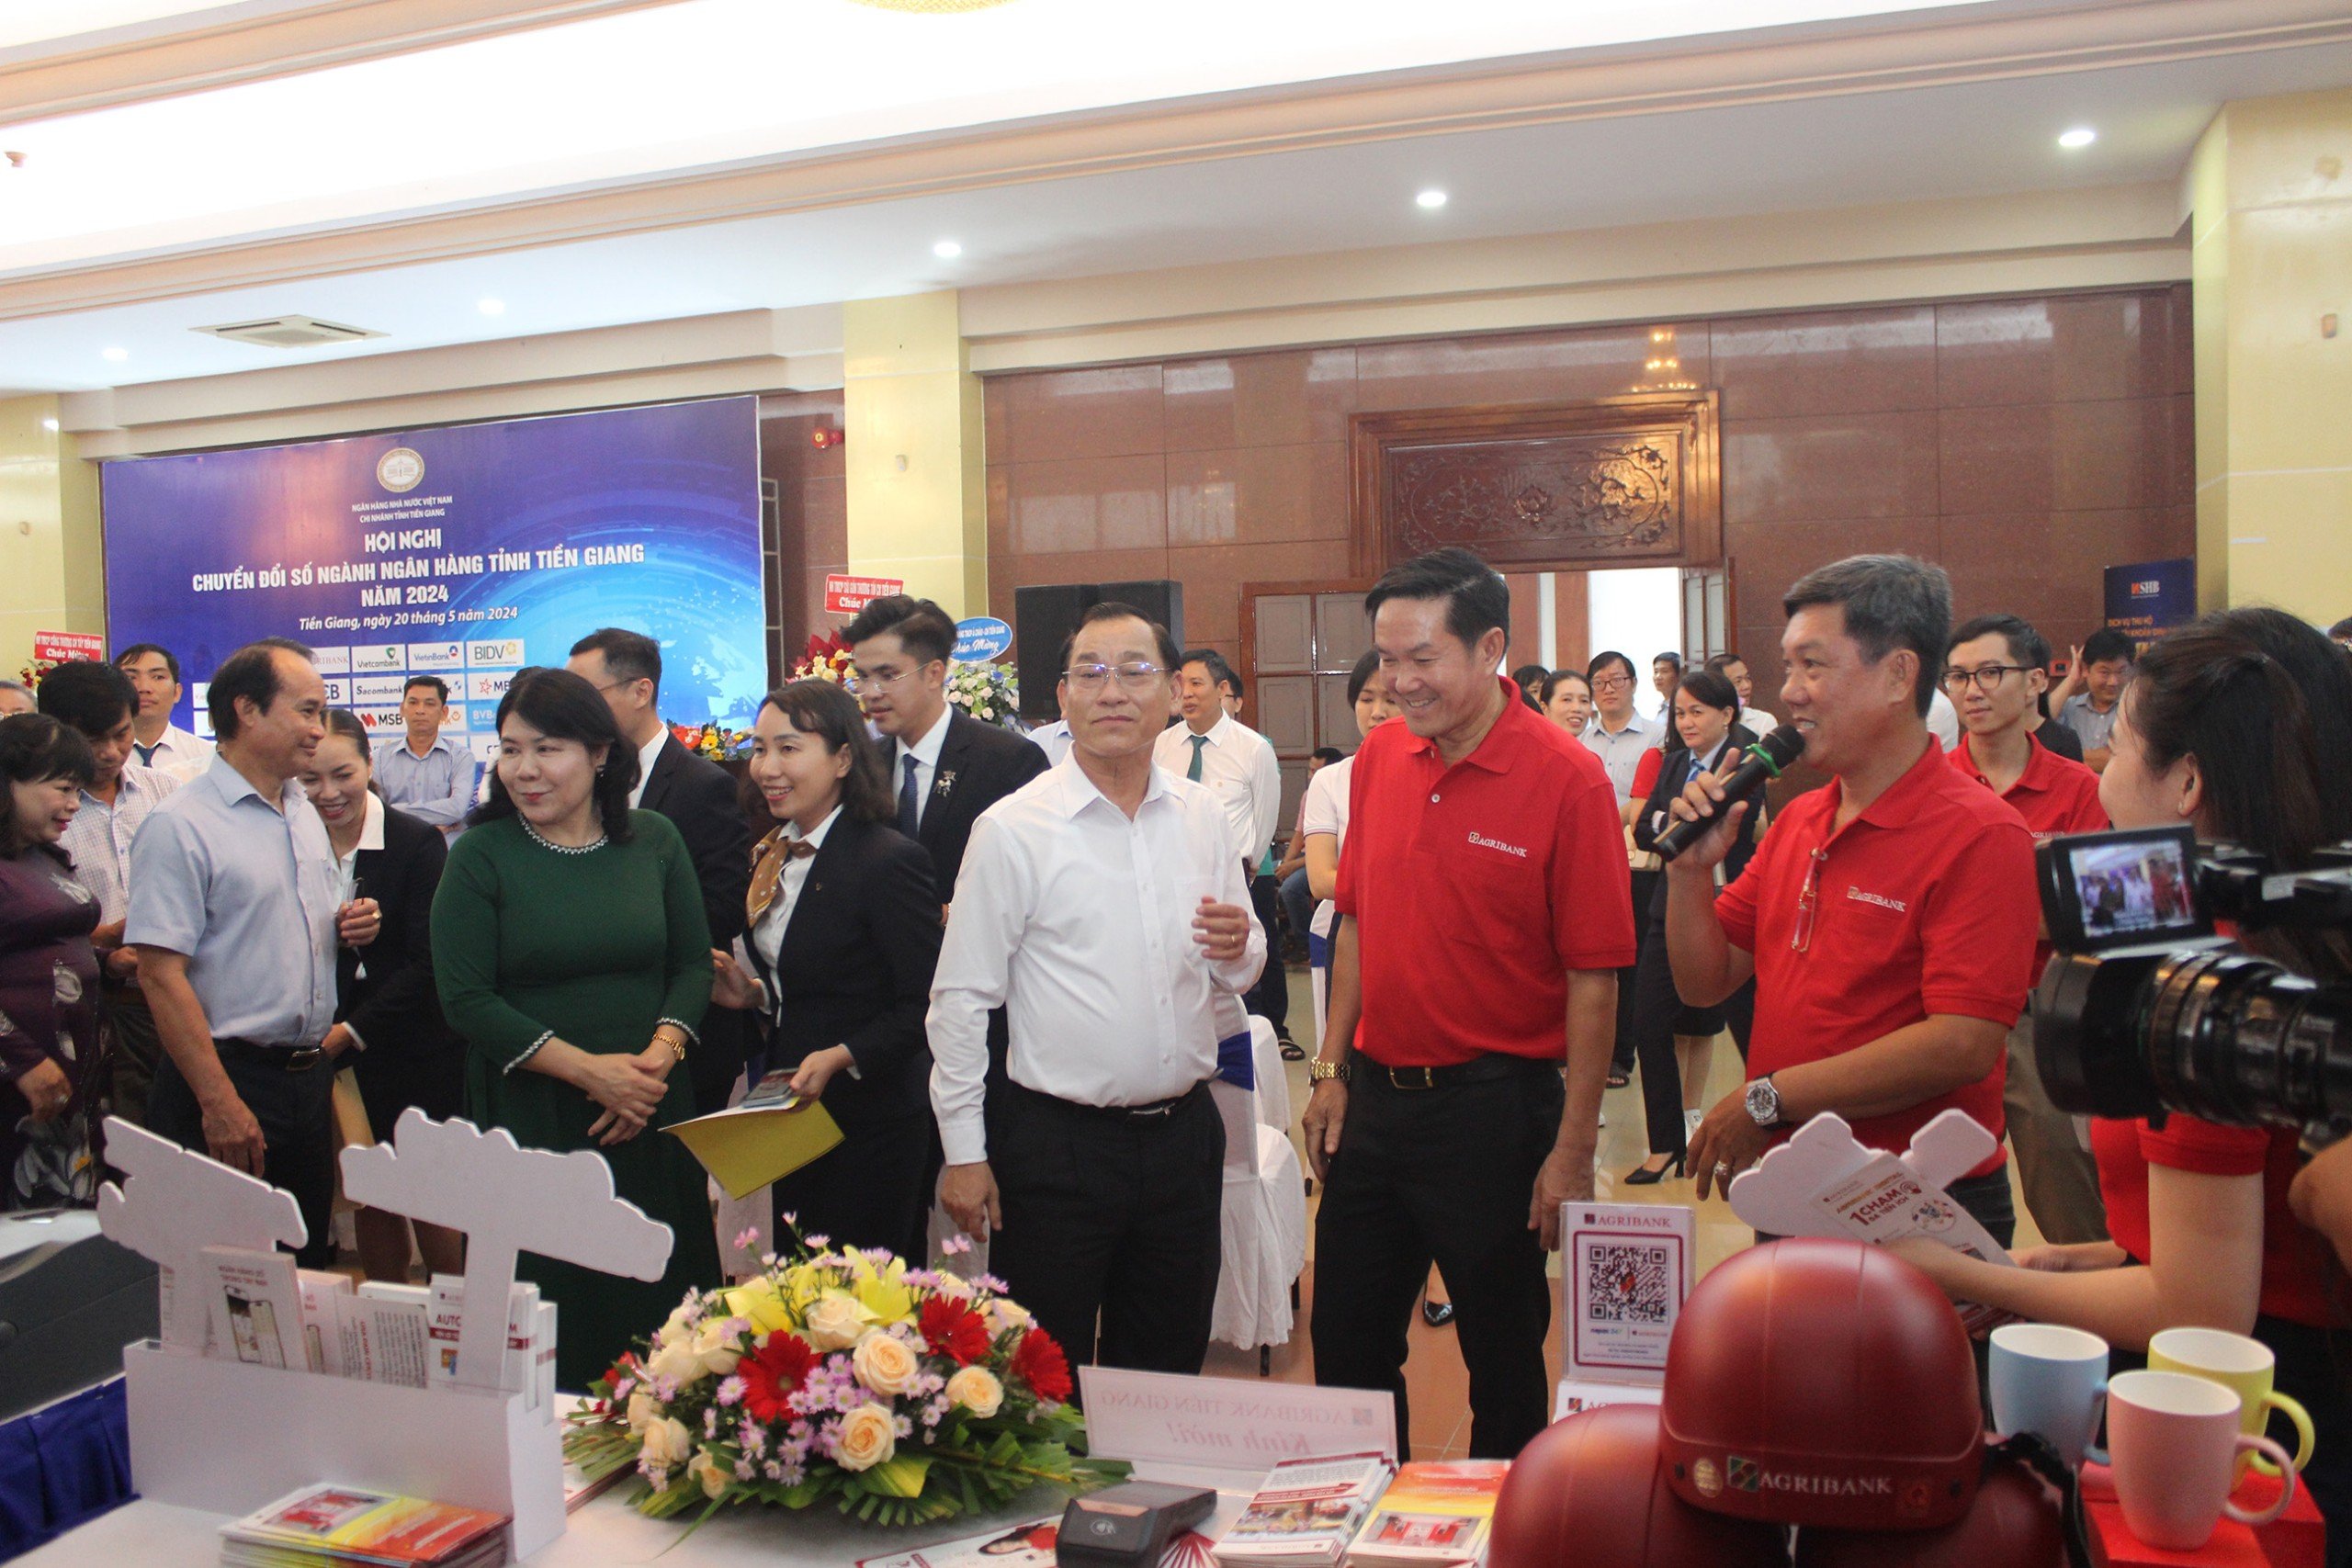 Agribank Tiền Giang giới thiệu nhiều giải pháp số ưu việt tại Hội nghị chuyển đổi số ngành Ngân hàng tỉnh Tiền Giang năm 2024- Ảnh 2.